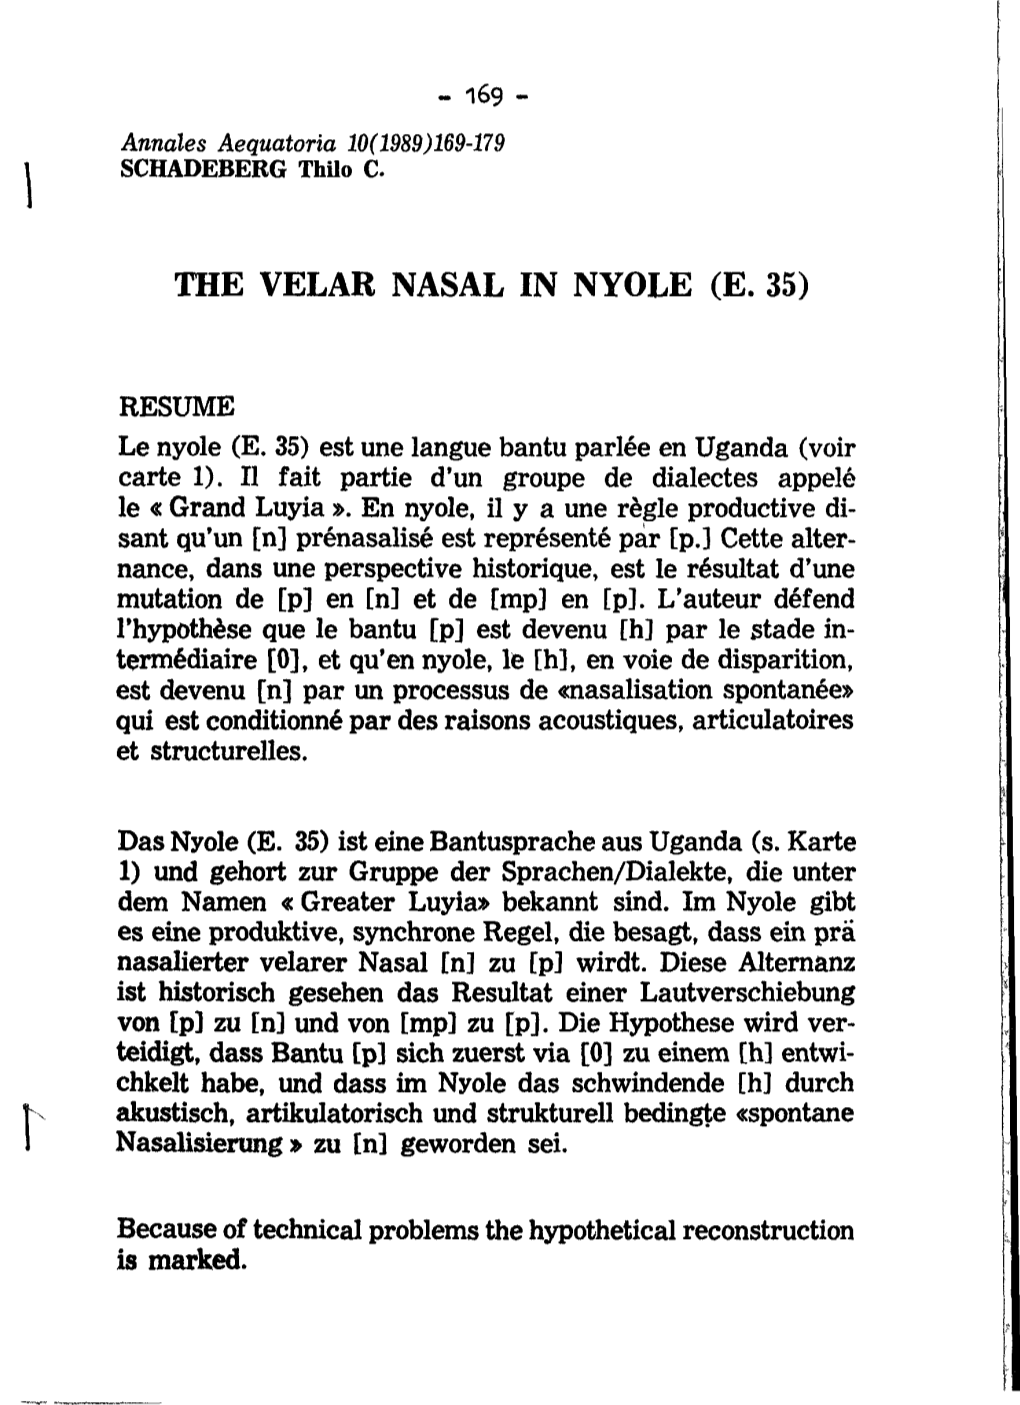 The Velar Nasal in Nyole (E